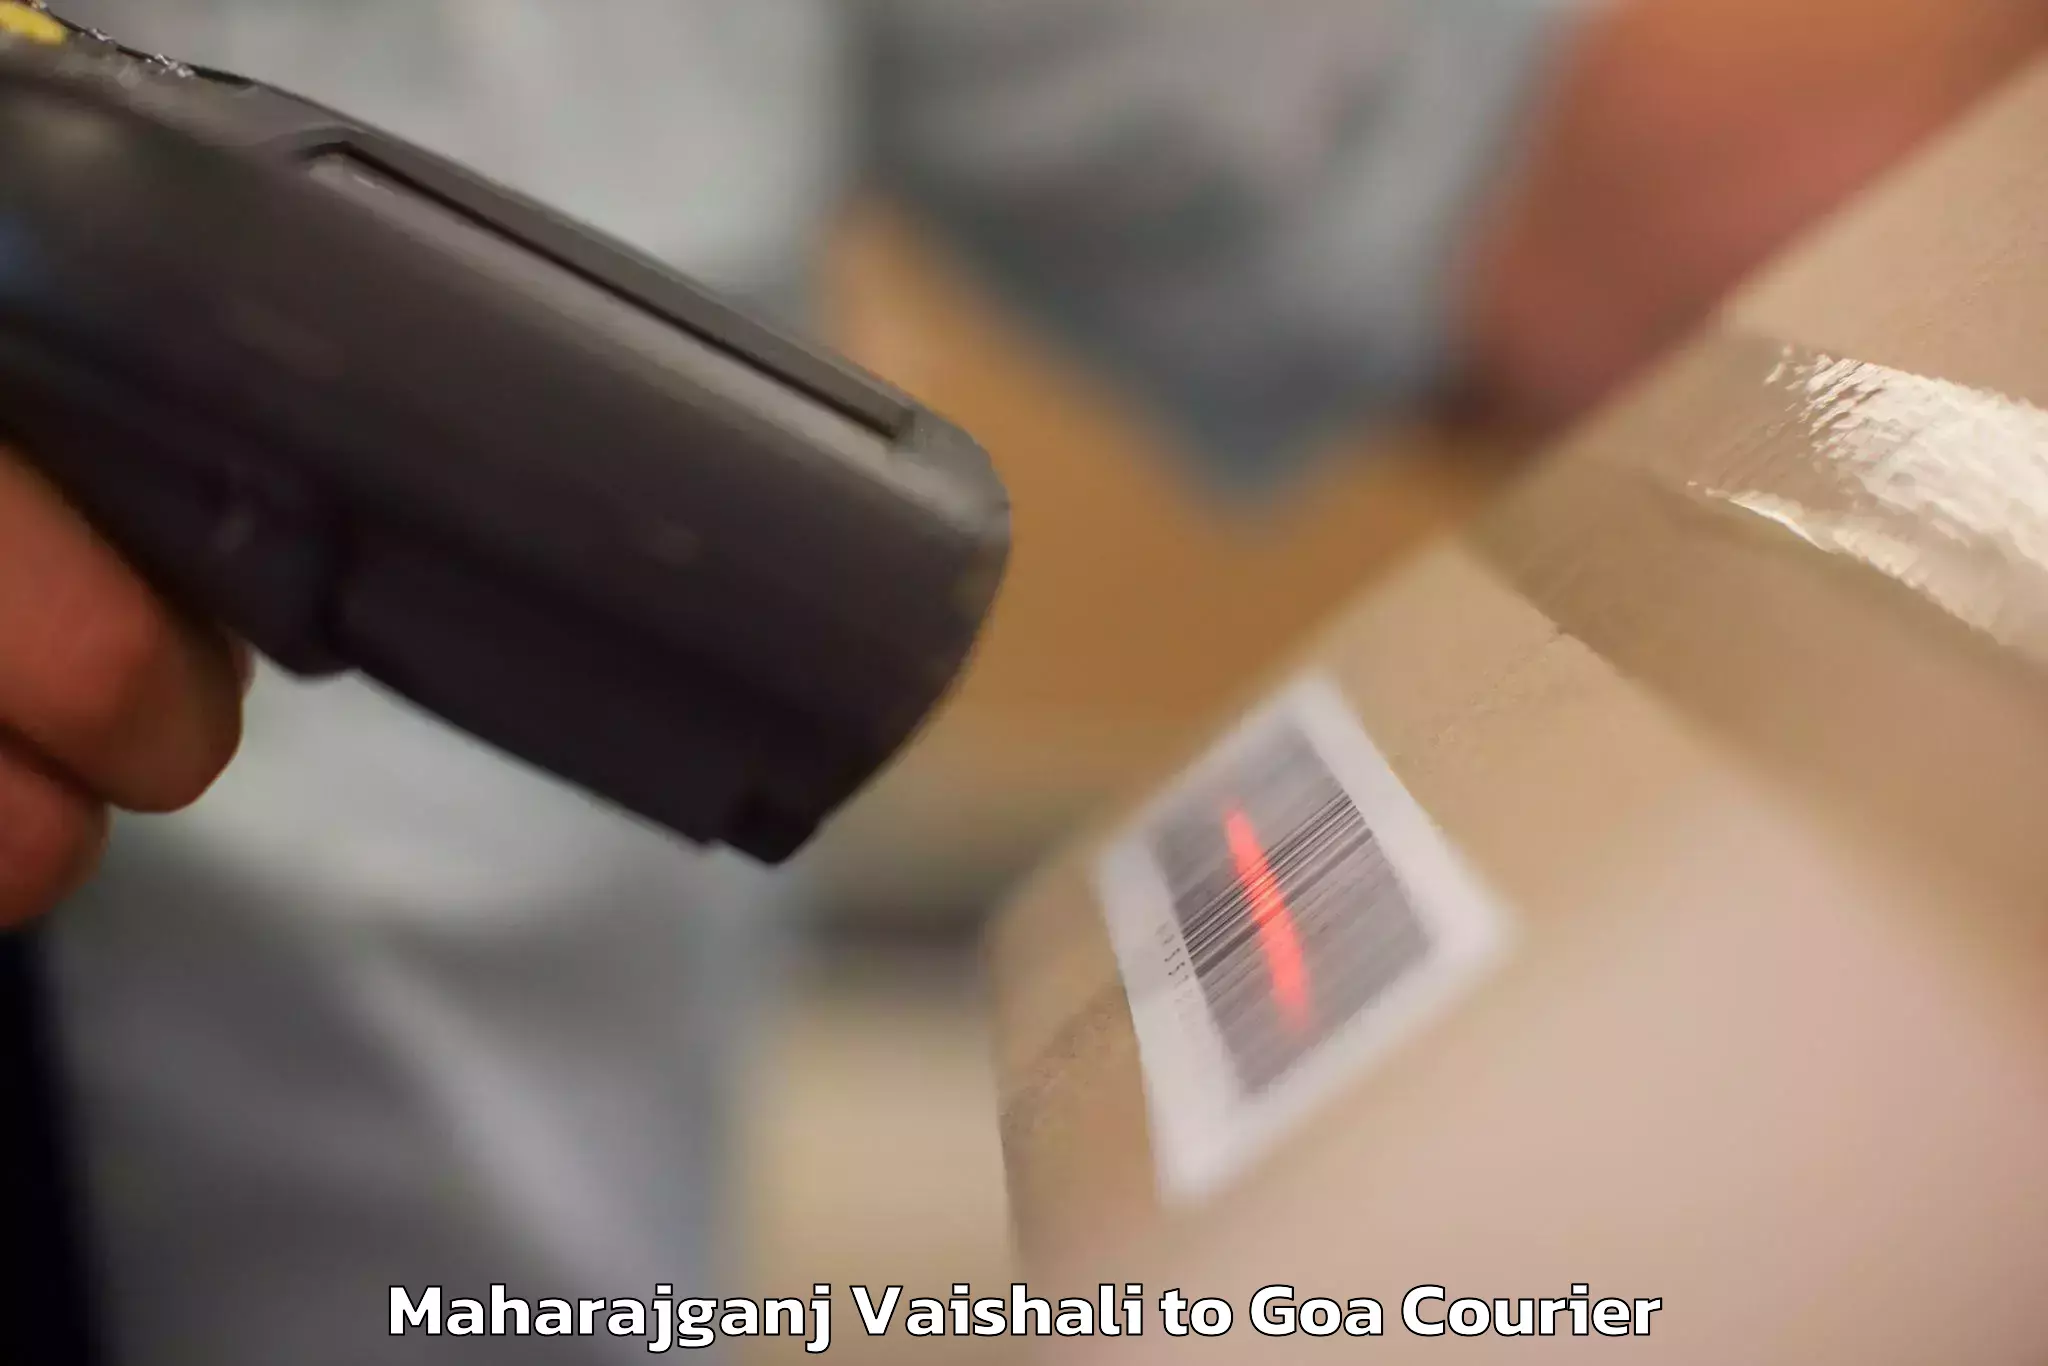 Luggage transport service Maharajganj Vaishali to Goa University